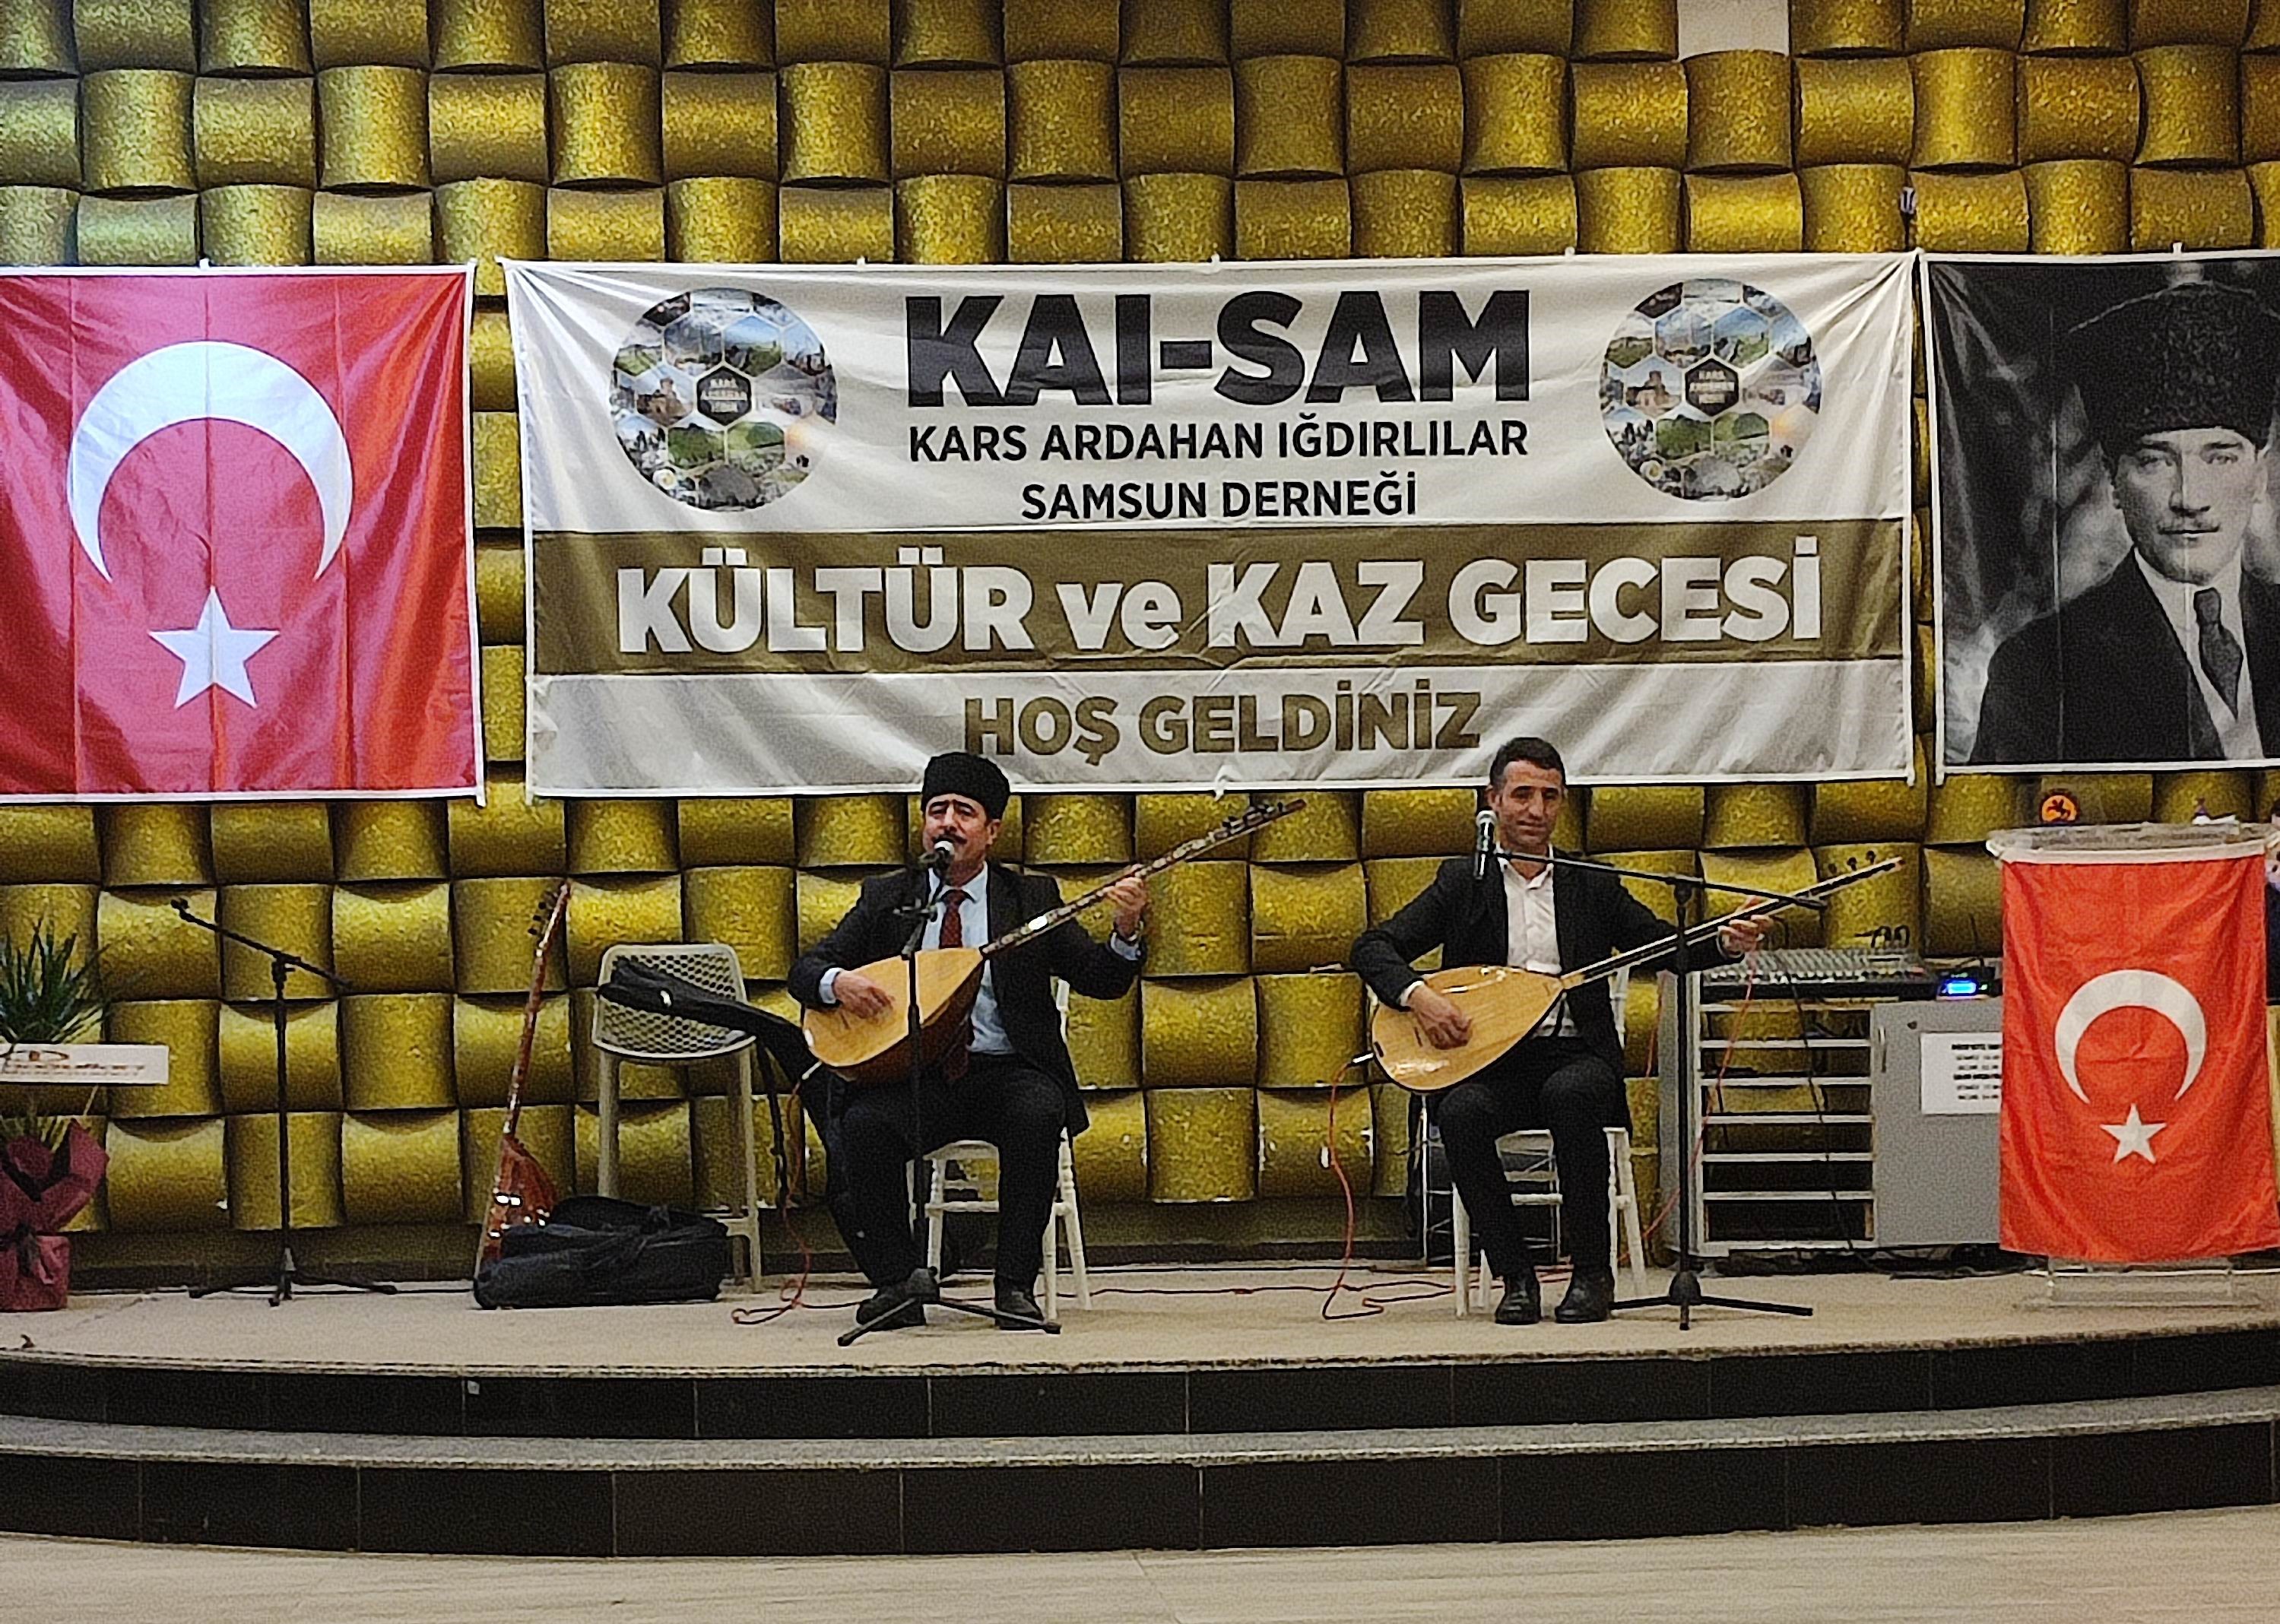 Samsun’da Kars, Ardahan, Iğdırlılar Derneği’nden Kültür Ve Kaz Gecesi Programı (1)